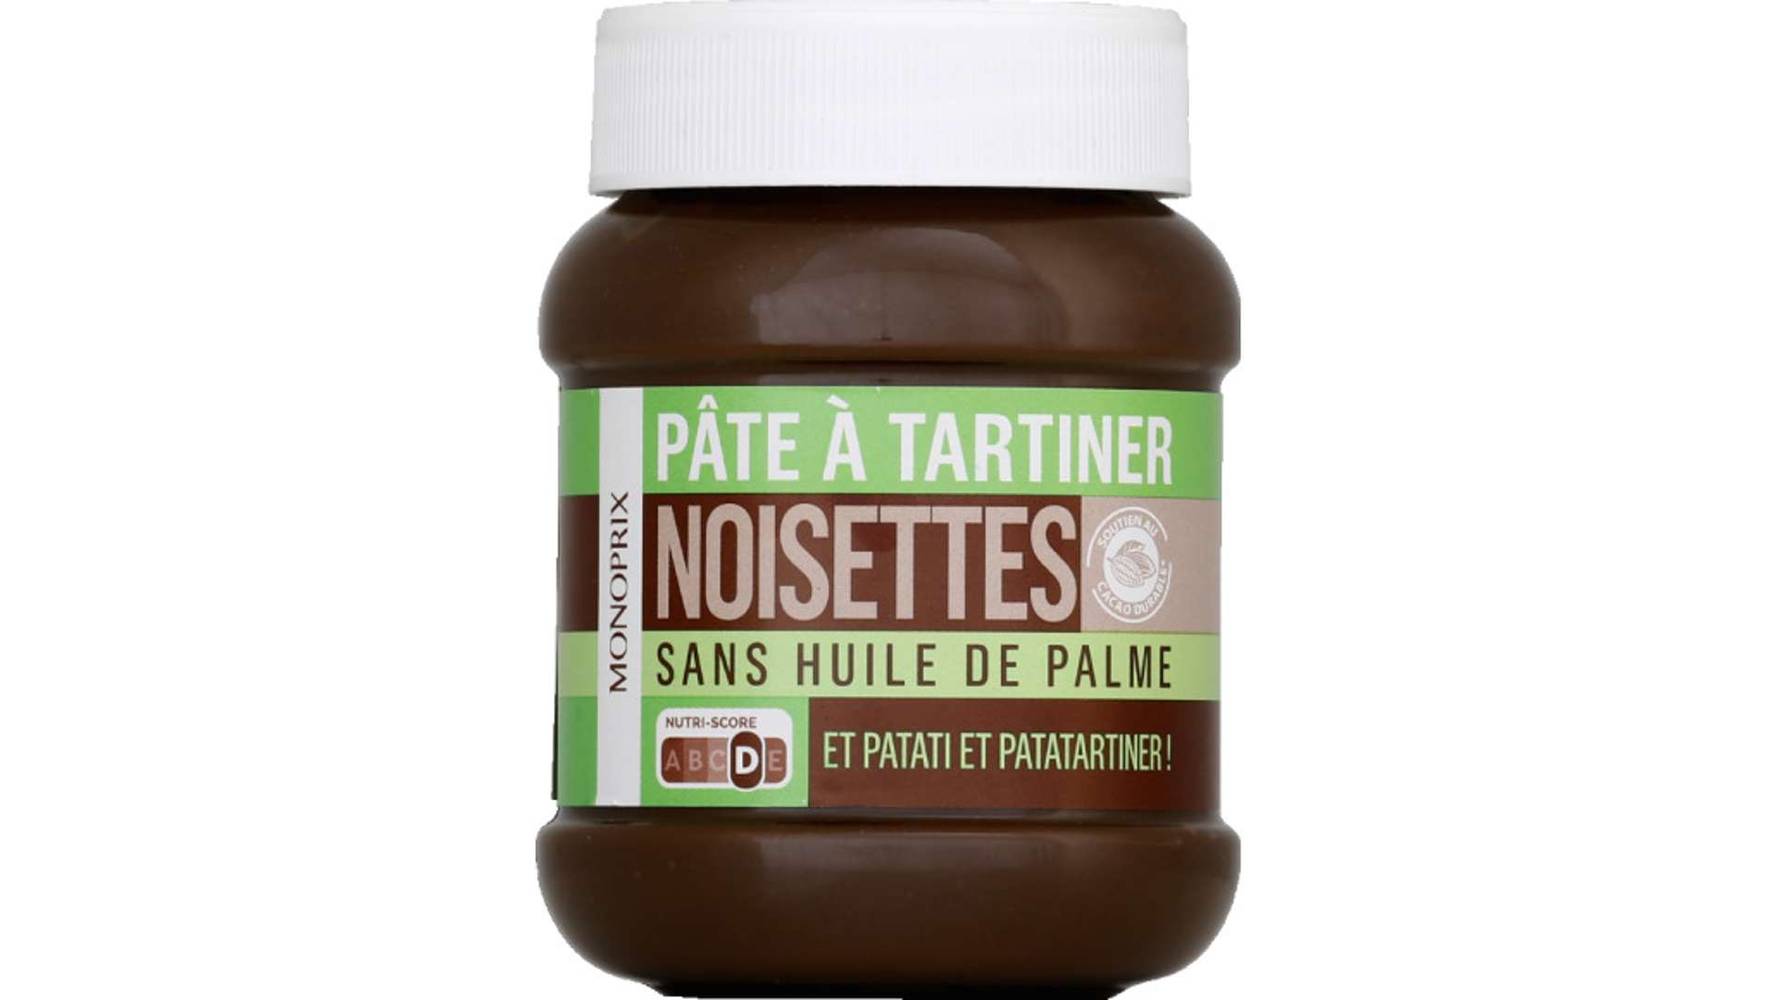 Monoprix Pâte @ tartiner noisettes, sans huile de palme Le pot de 400 g